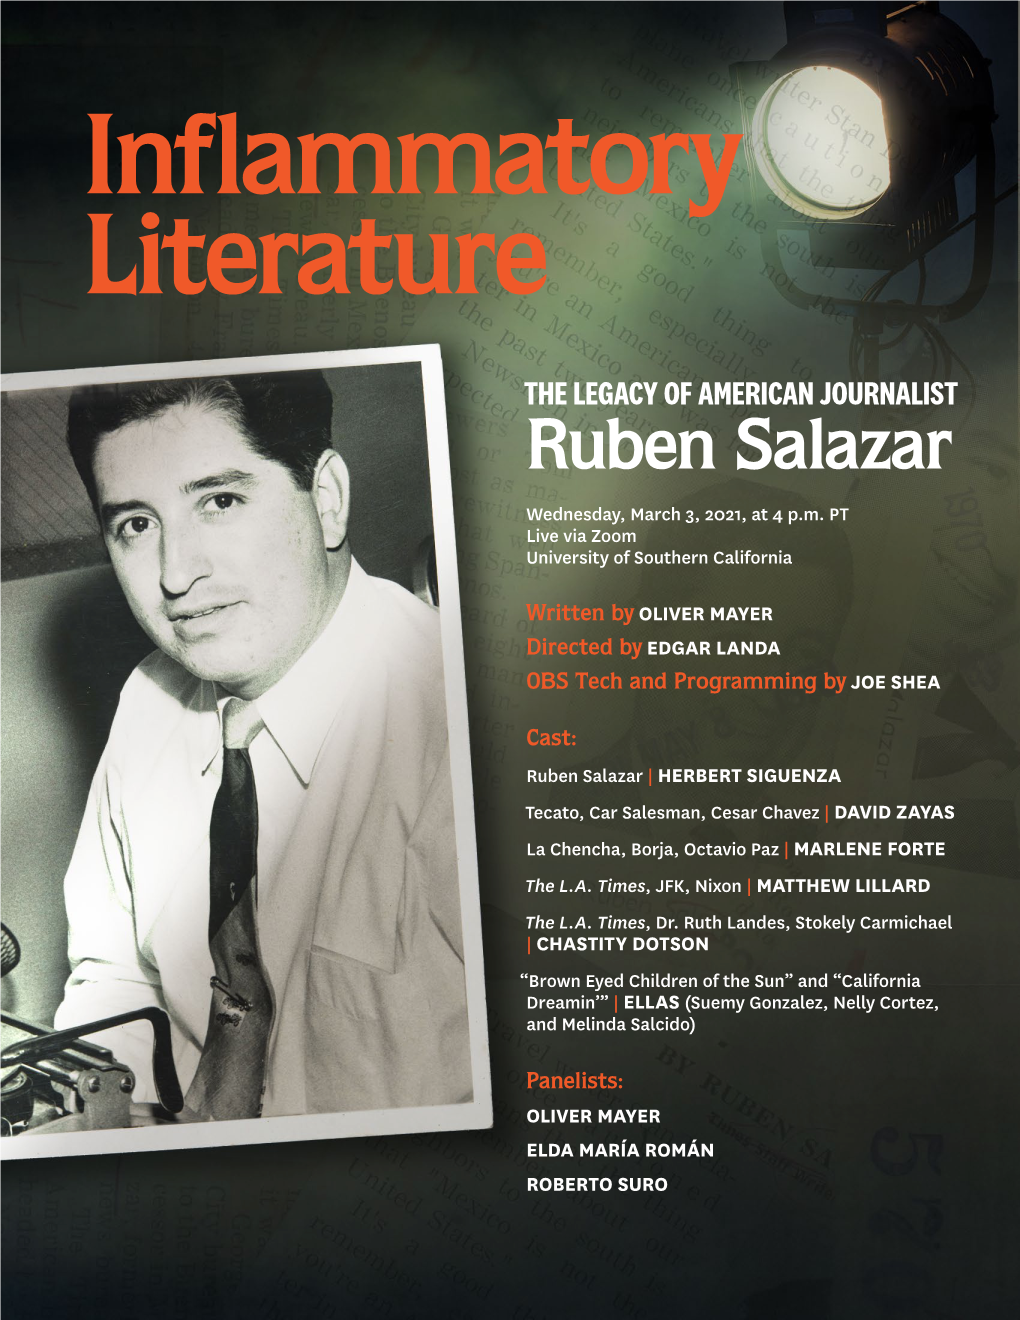 Ruben Salazar Wednesday, March 3, 2021, at 4 P.M